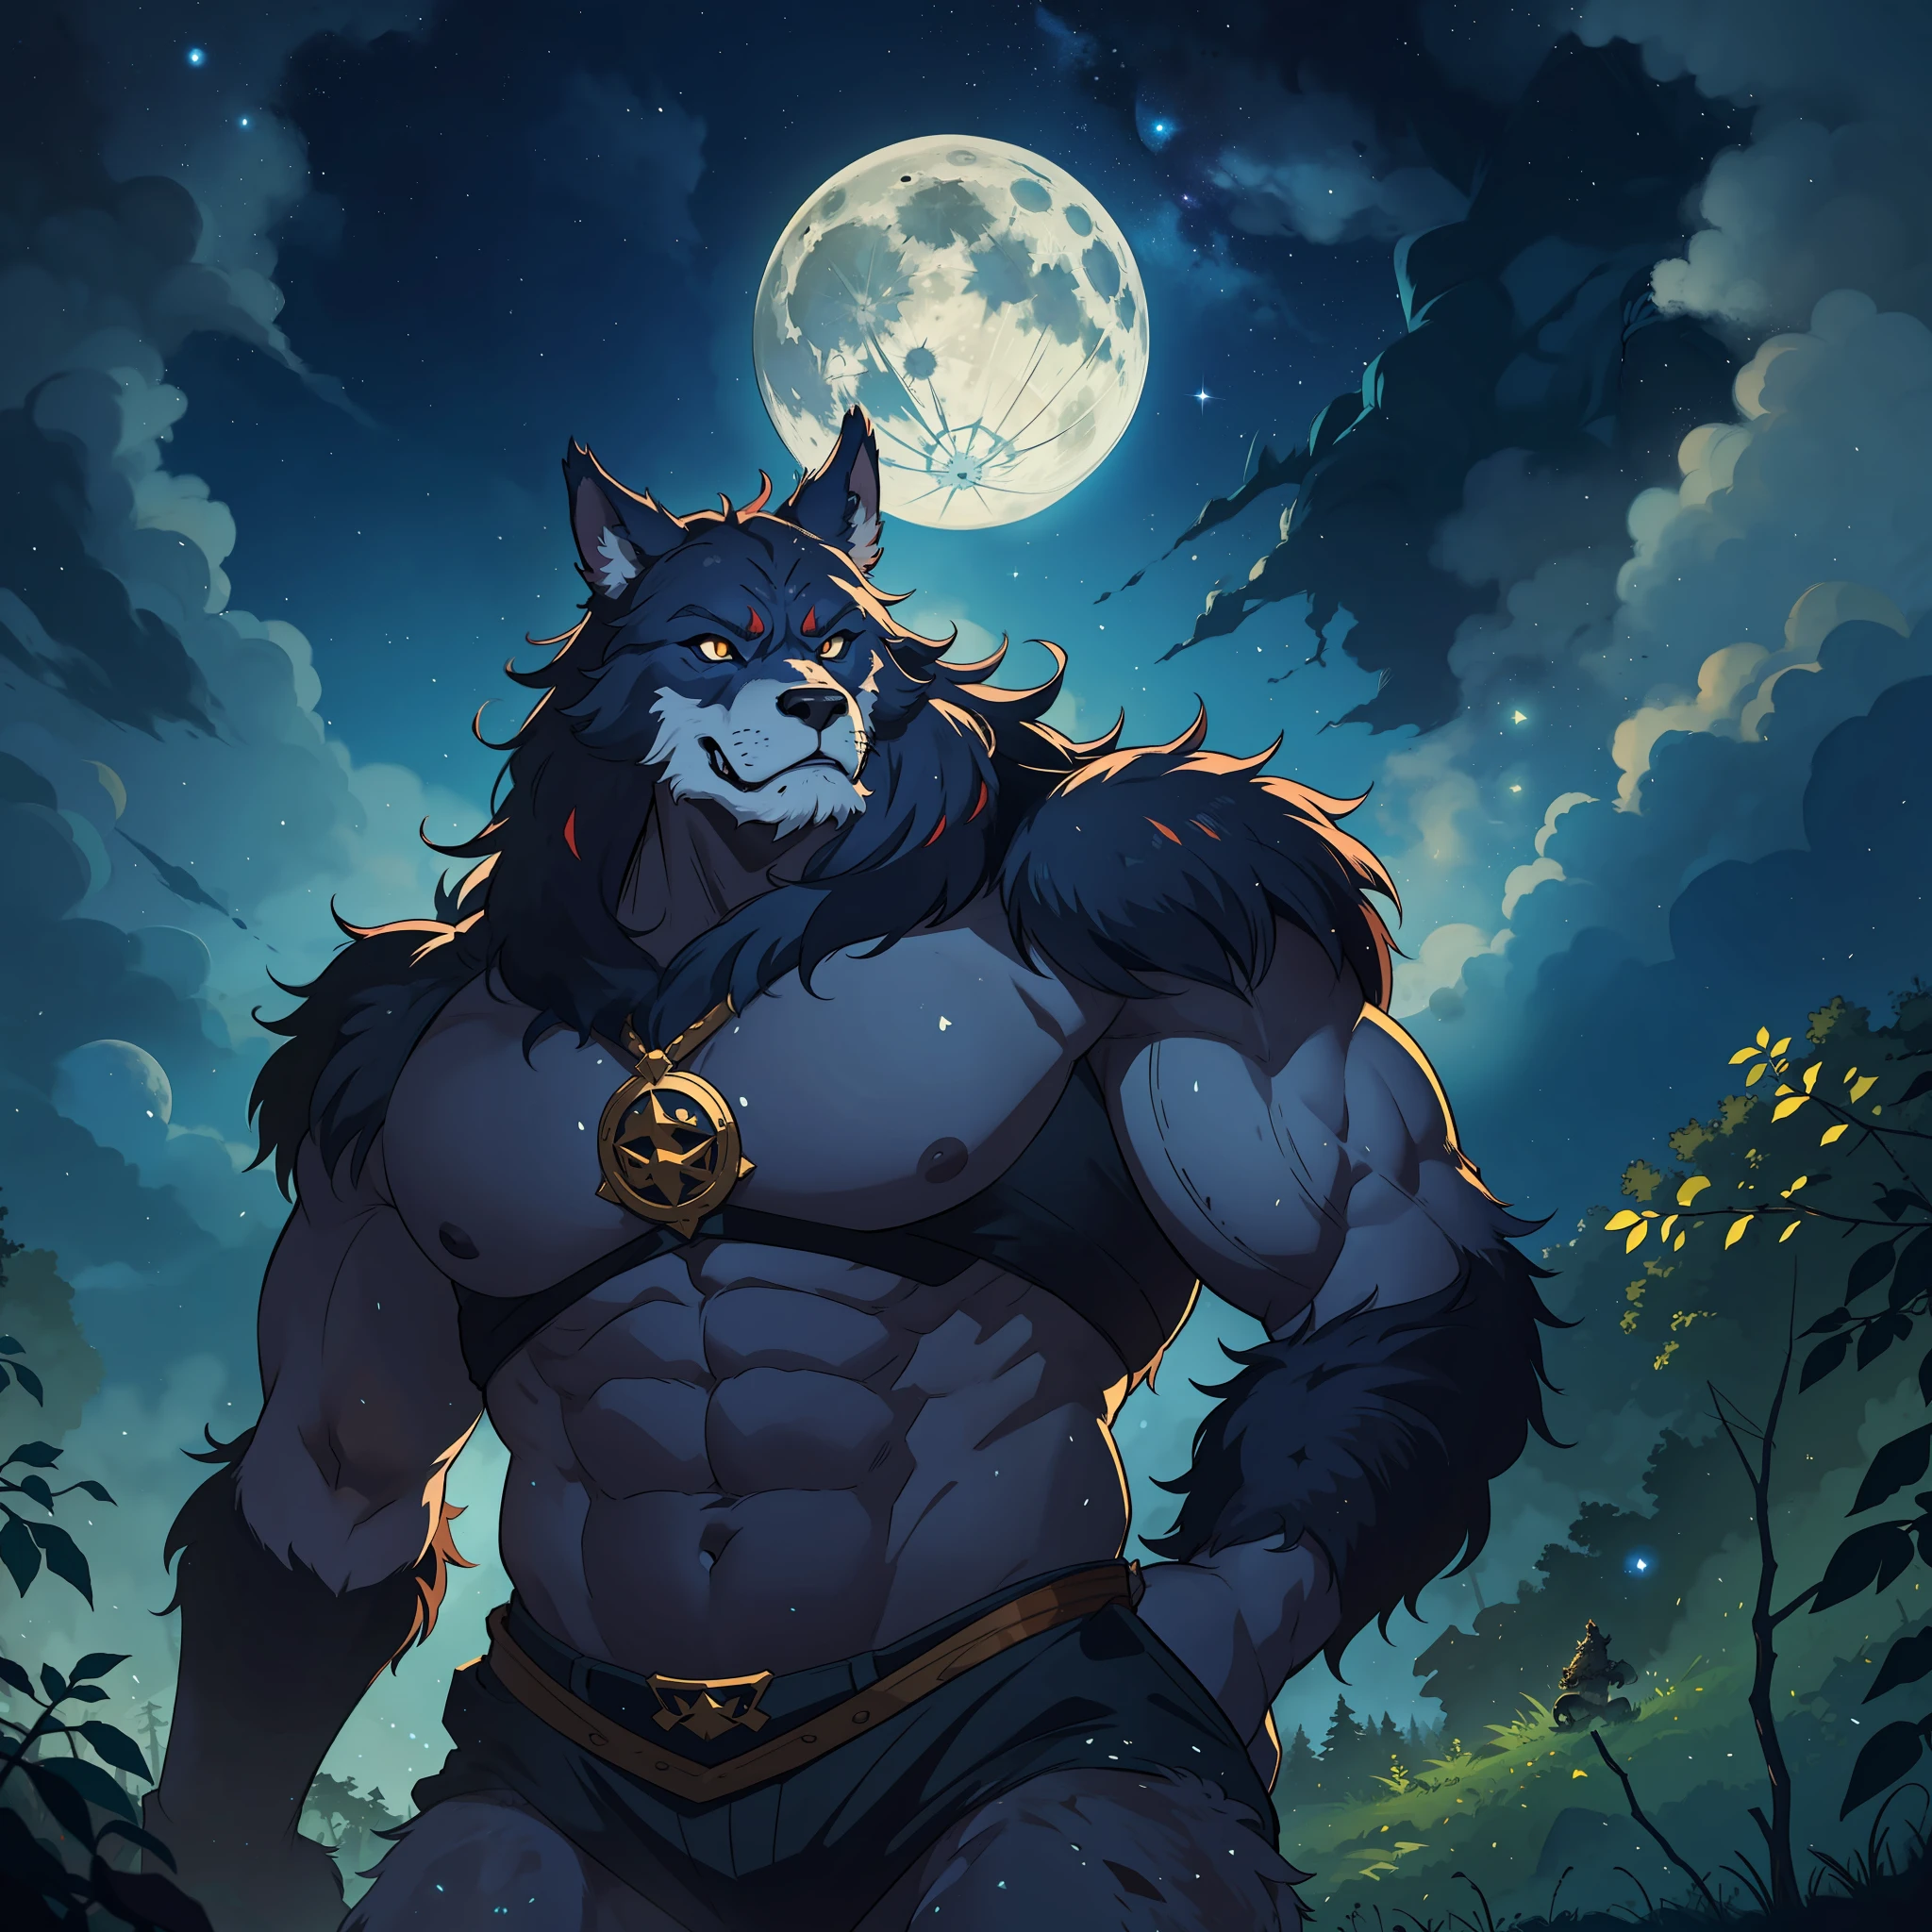 넓고 큰 몸을 가진 늑대 인간, 짐승, 그는 숲 한가운데에 있습니다, 보름달과 인상적인 별이 빛나는 하늘을 배경으로 중세 RPG